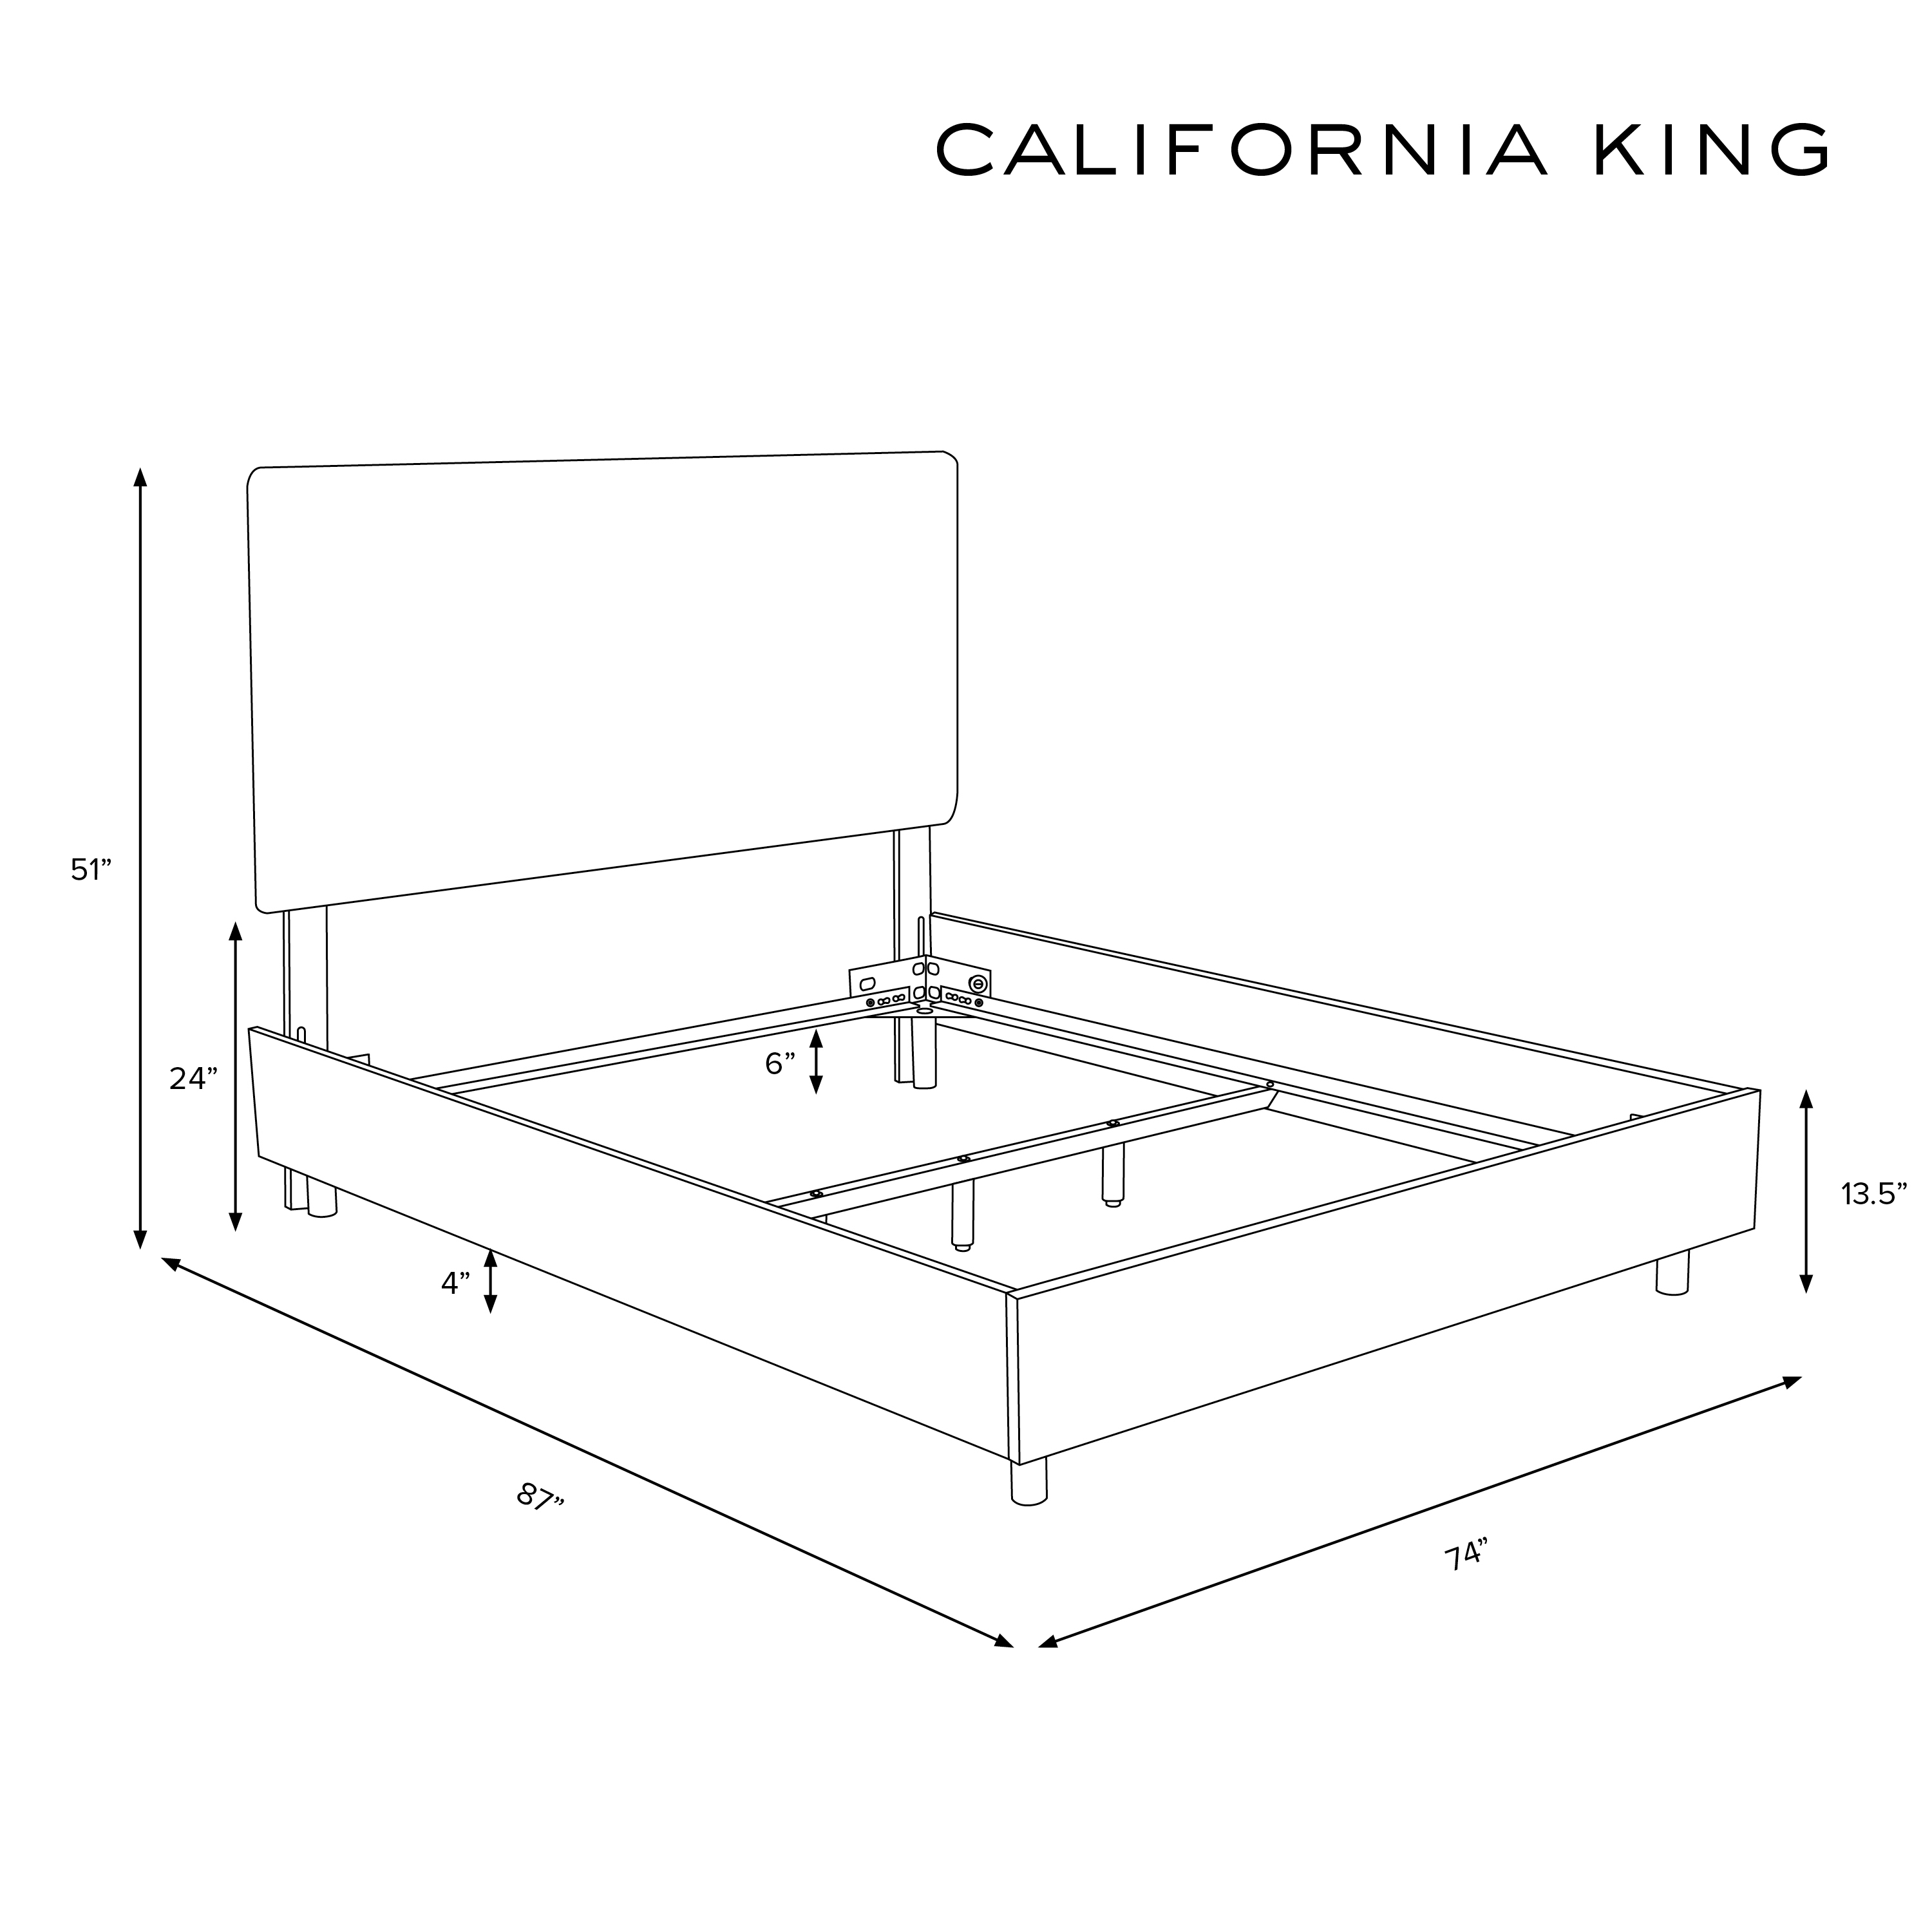 California King Kimball Bed, Black Nailheads - Image 5